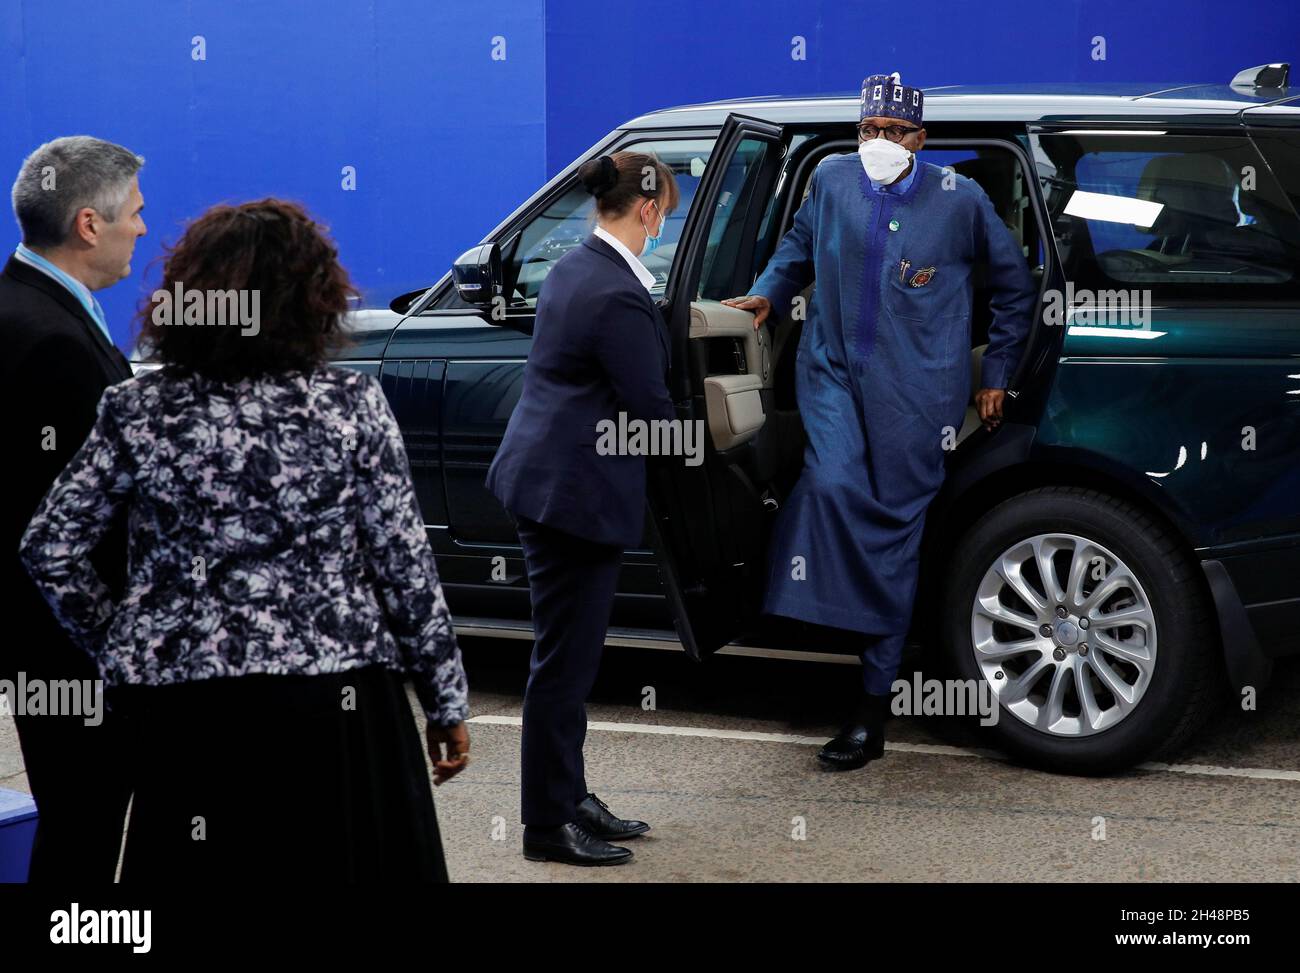 Der nigeranische Präsident Muhammadu Buhari kommt zum Cop26-Gipfel auf dem Scottish Event Campus (SEC) in Glasgow an. Bilddatum: Montag, 1. November 2021. Stockfoto